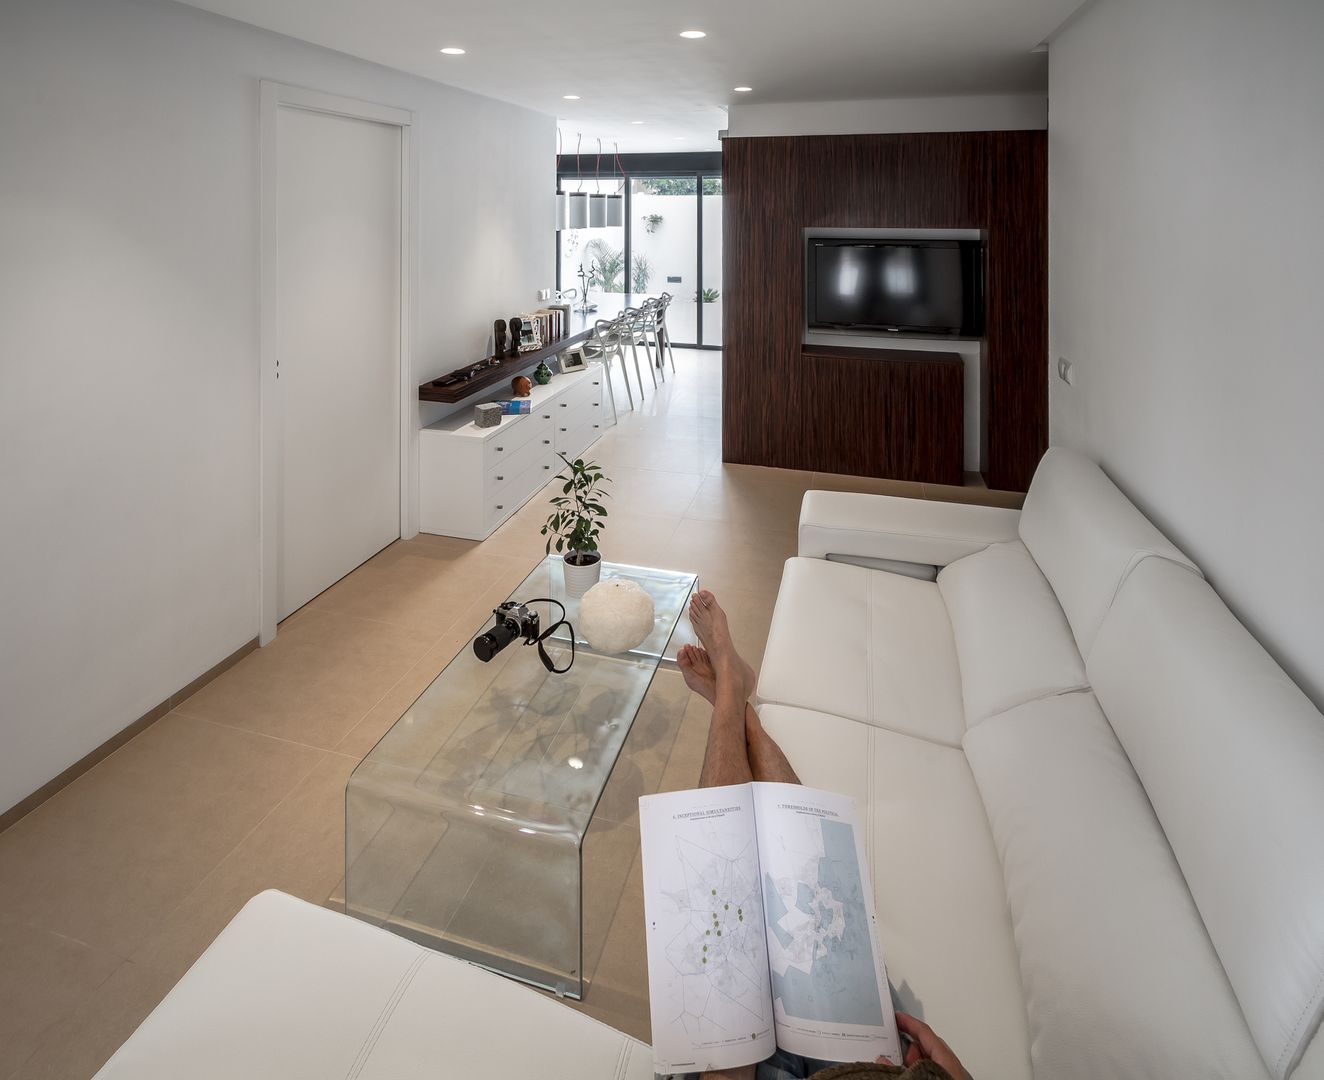 La casita del mar, Selecta HOME Selecta HOME Modern living room